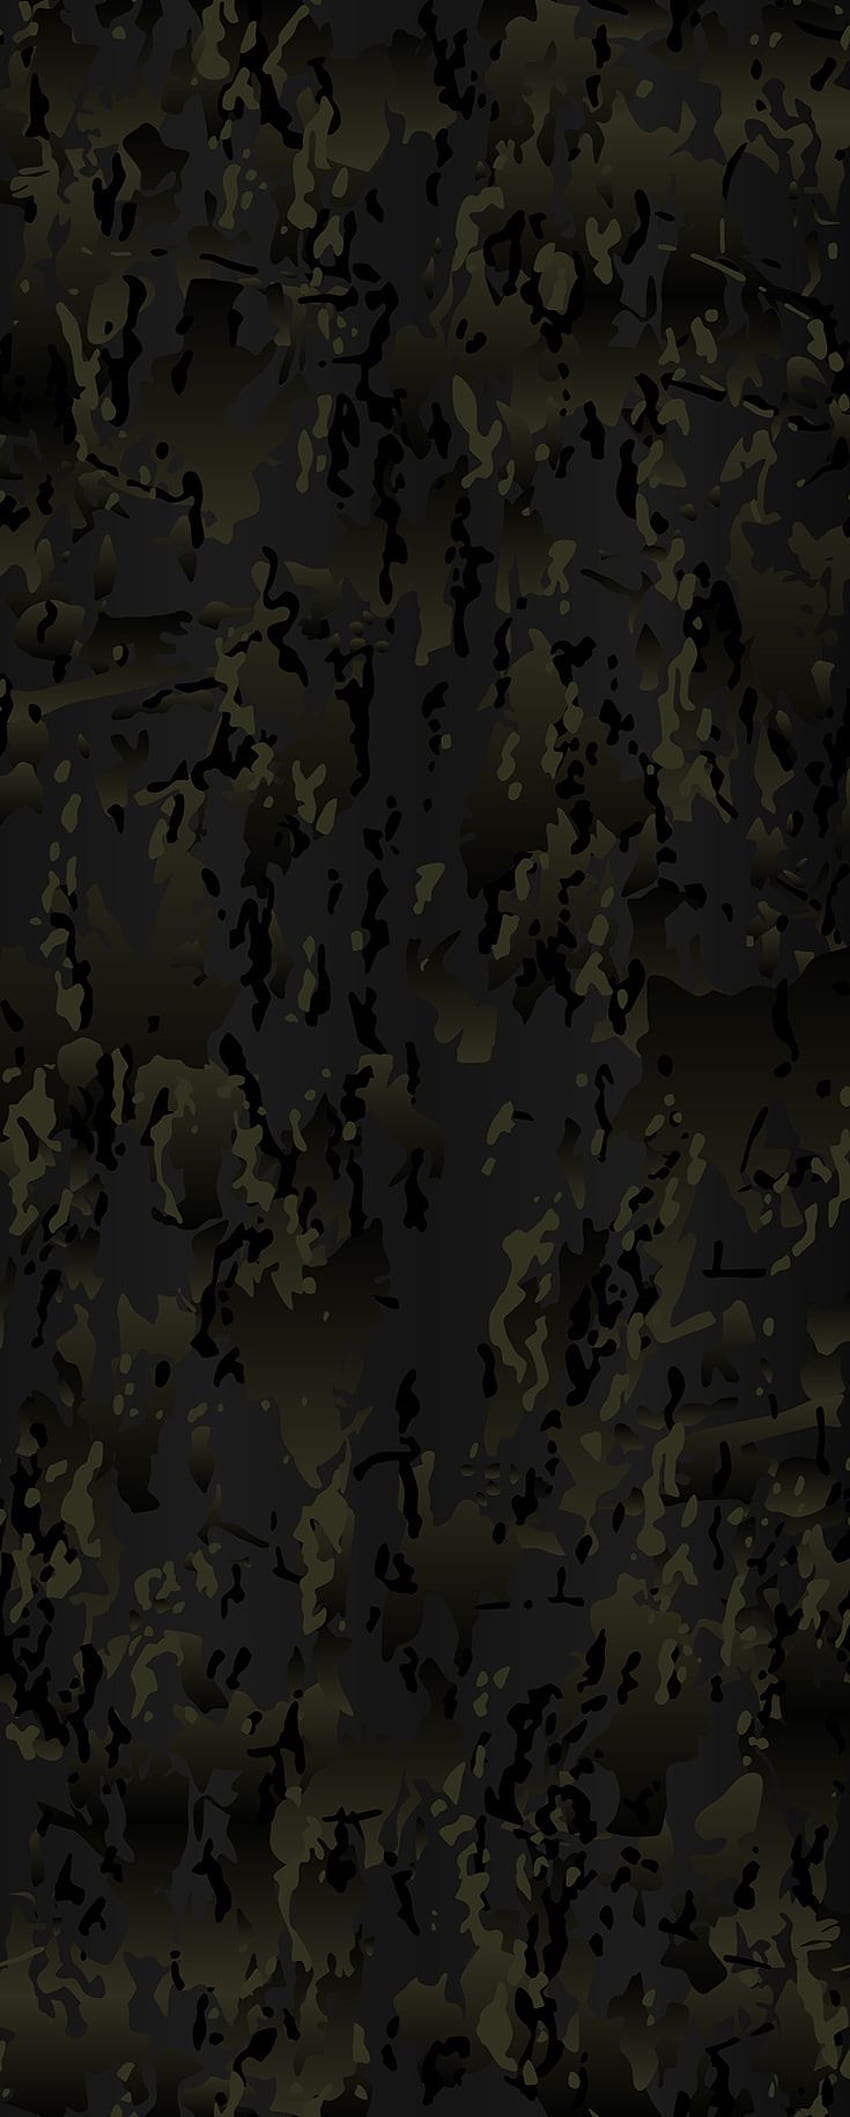 Patrón de camuflaje vectorial negro OCP para impresión, escorpión, ejército, uniforme, impresión, textura, camuflaje militar, negro, noche, urbano, camuflaje negro fondo de pantalla del teléfono